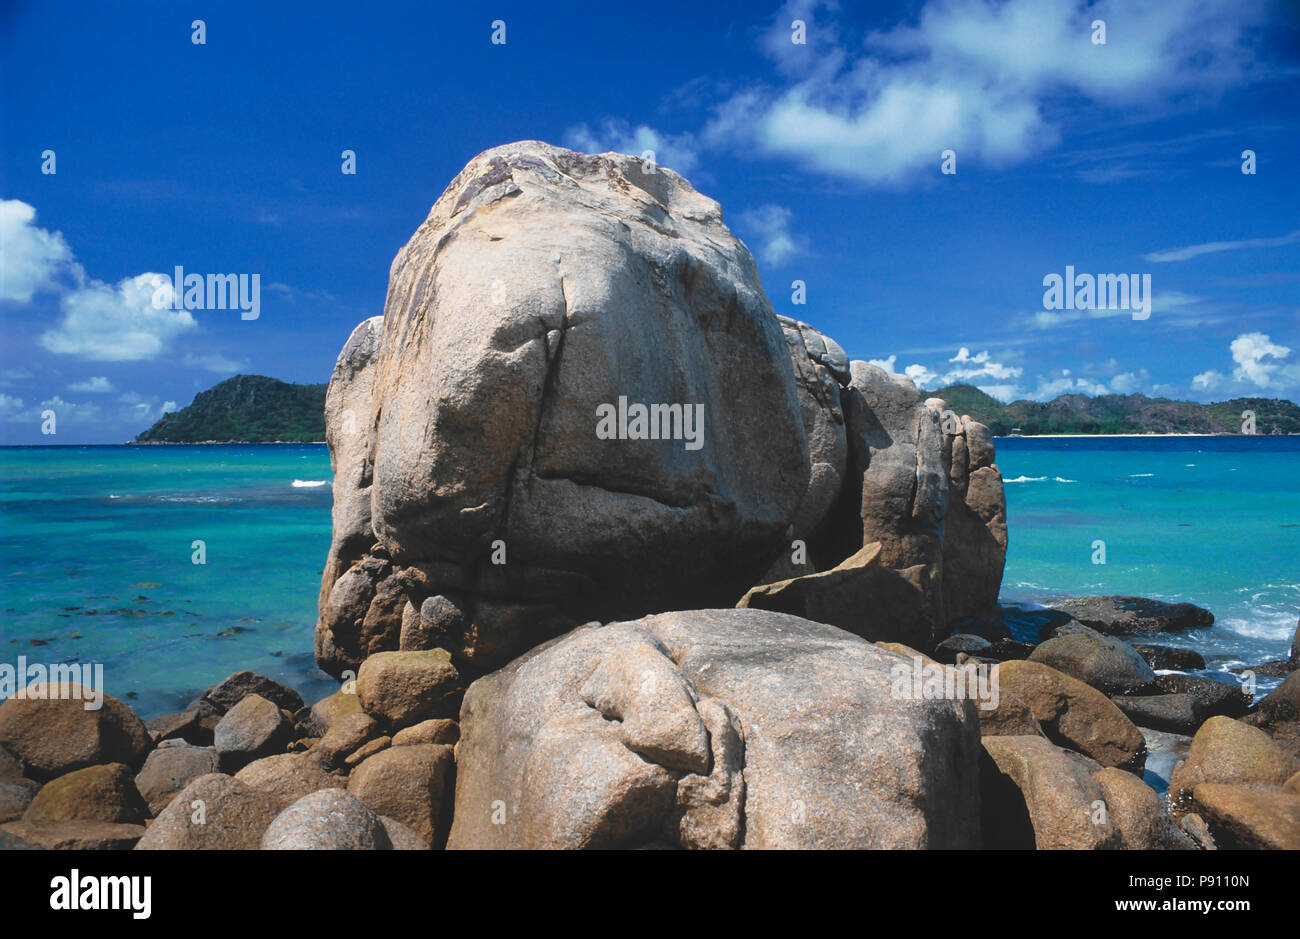 Strand MIT GROSSEN FELSEN UND BLICK AUF DIE INSEL, Seychellen, Insel, Ost Afrika. Juni 2009. Die schönen Inseln der Seychellen im Indischen Ozean bieten p Stockfoto